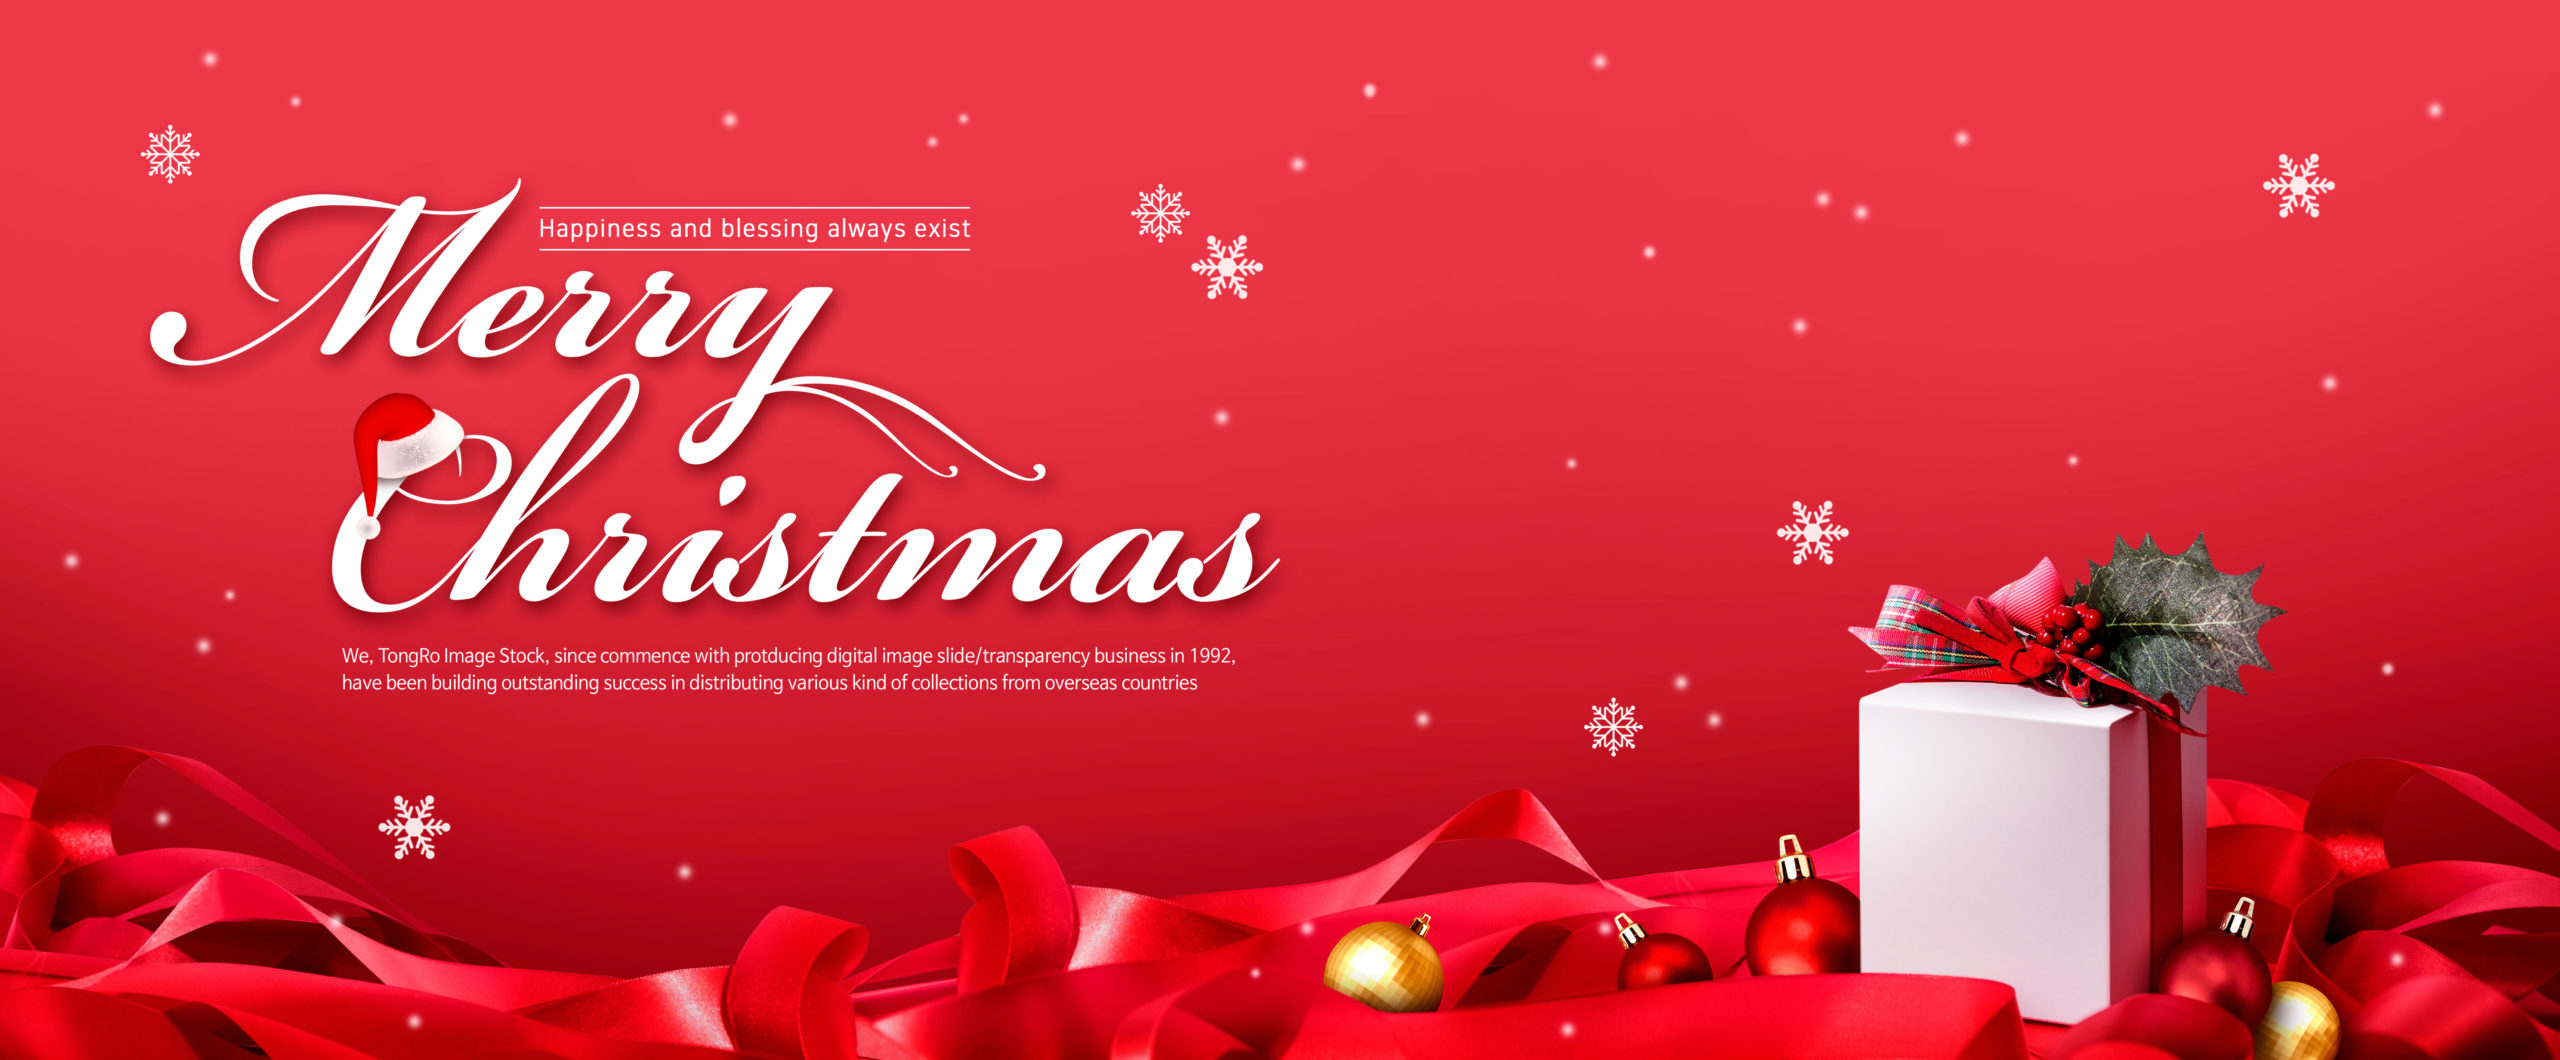 大红色圣诞购物促销活动电商广告Banner设计模板插图